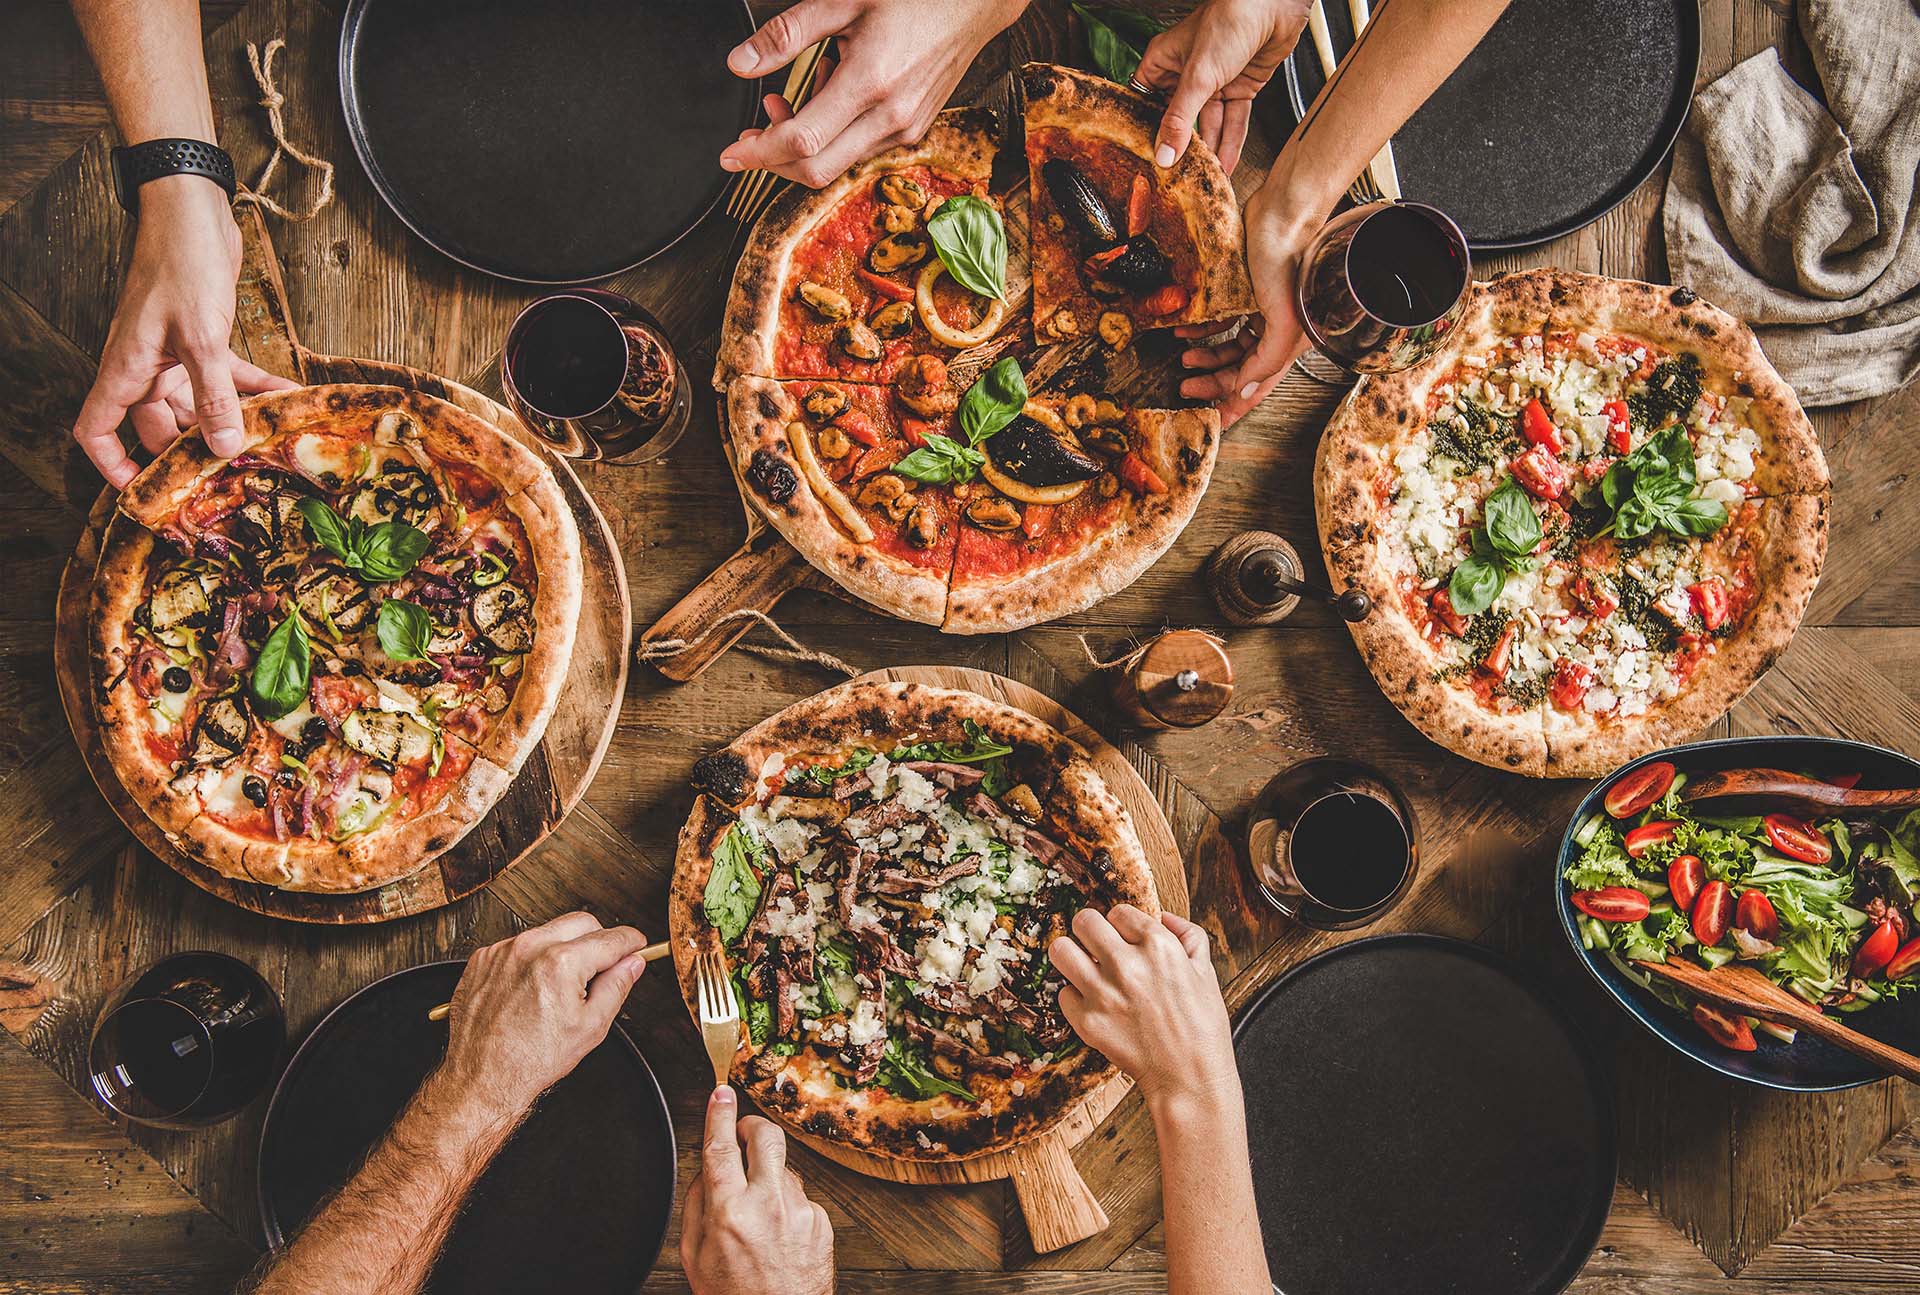 Freunde essen zusammen Pizza, verschiedene Pizzen auf einem Tisch